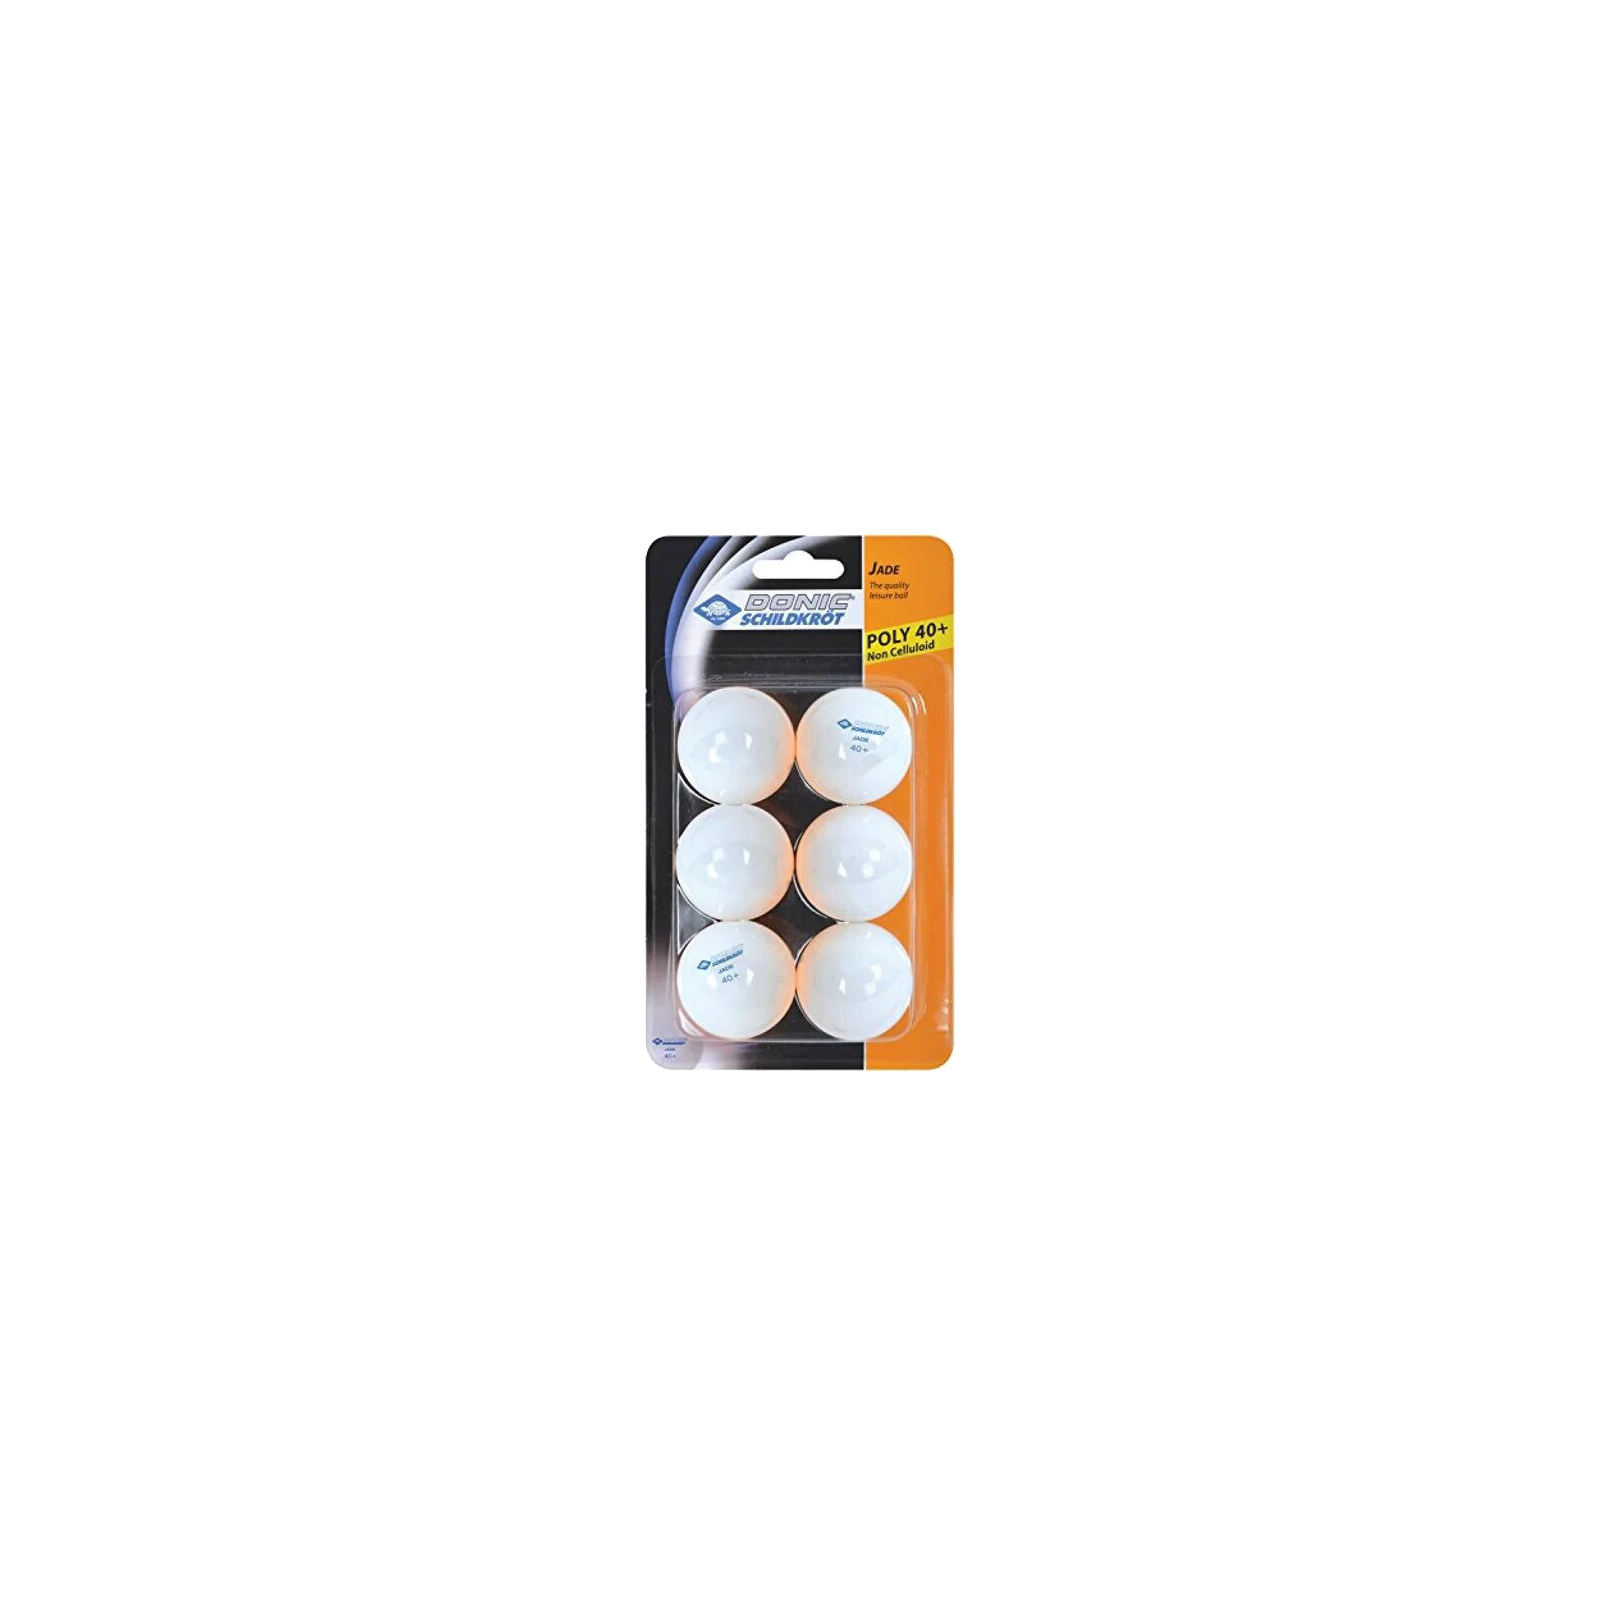 М'ячик для настільного теніса Donic Jade ball 40+ 6 шт White (618371)